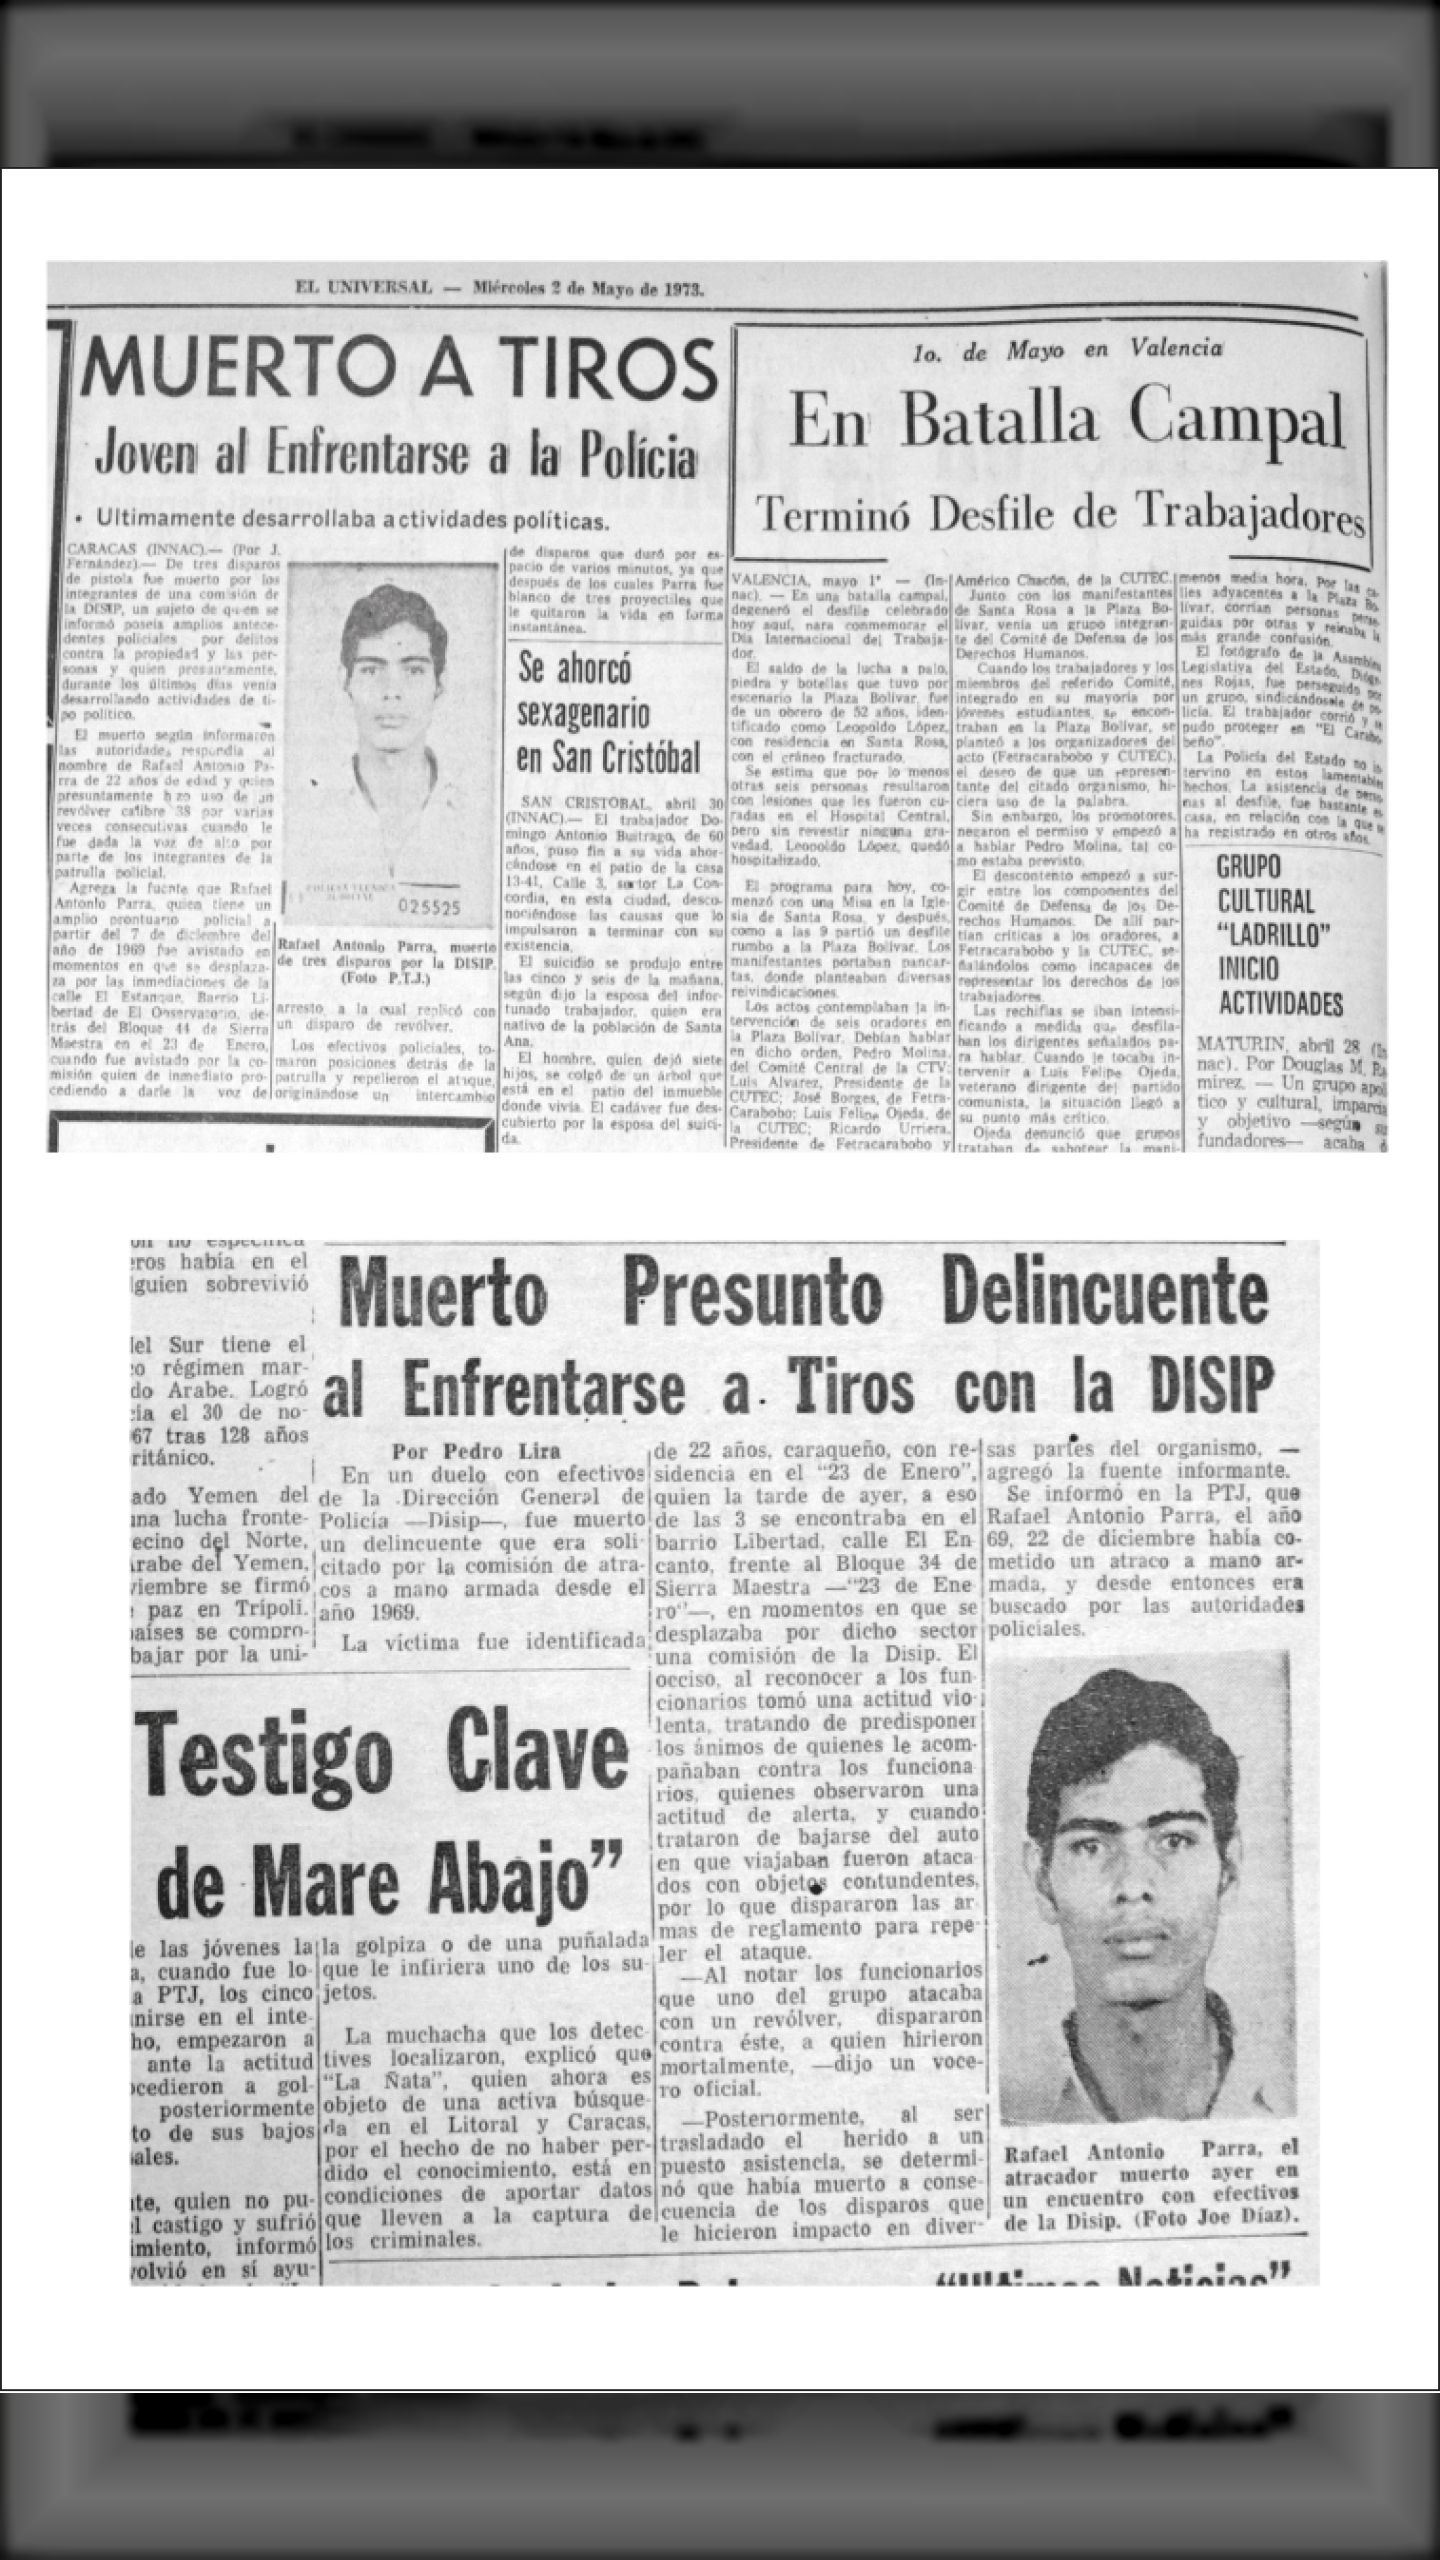 MUERTO A TIROS EL DIRIGENTE OBRERO RAFAEL ANTONIO PARRA (EL UNIVERSAL, 02 de mayo 1973)